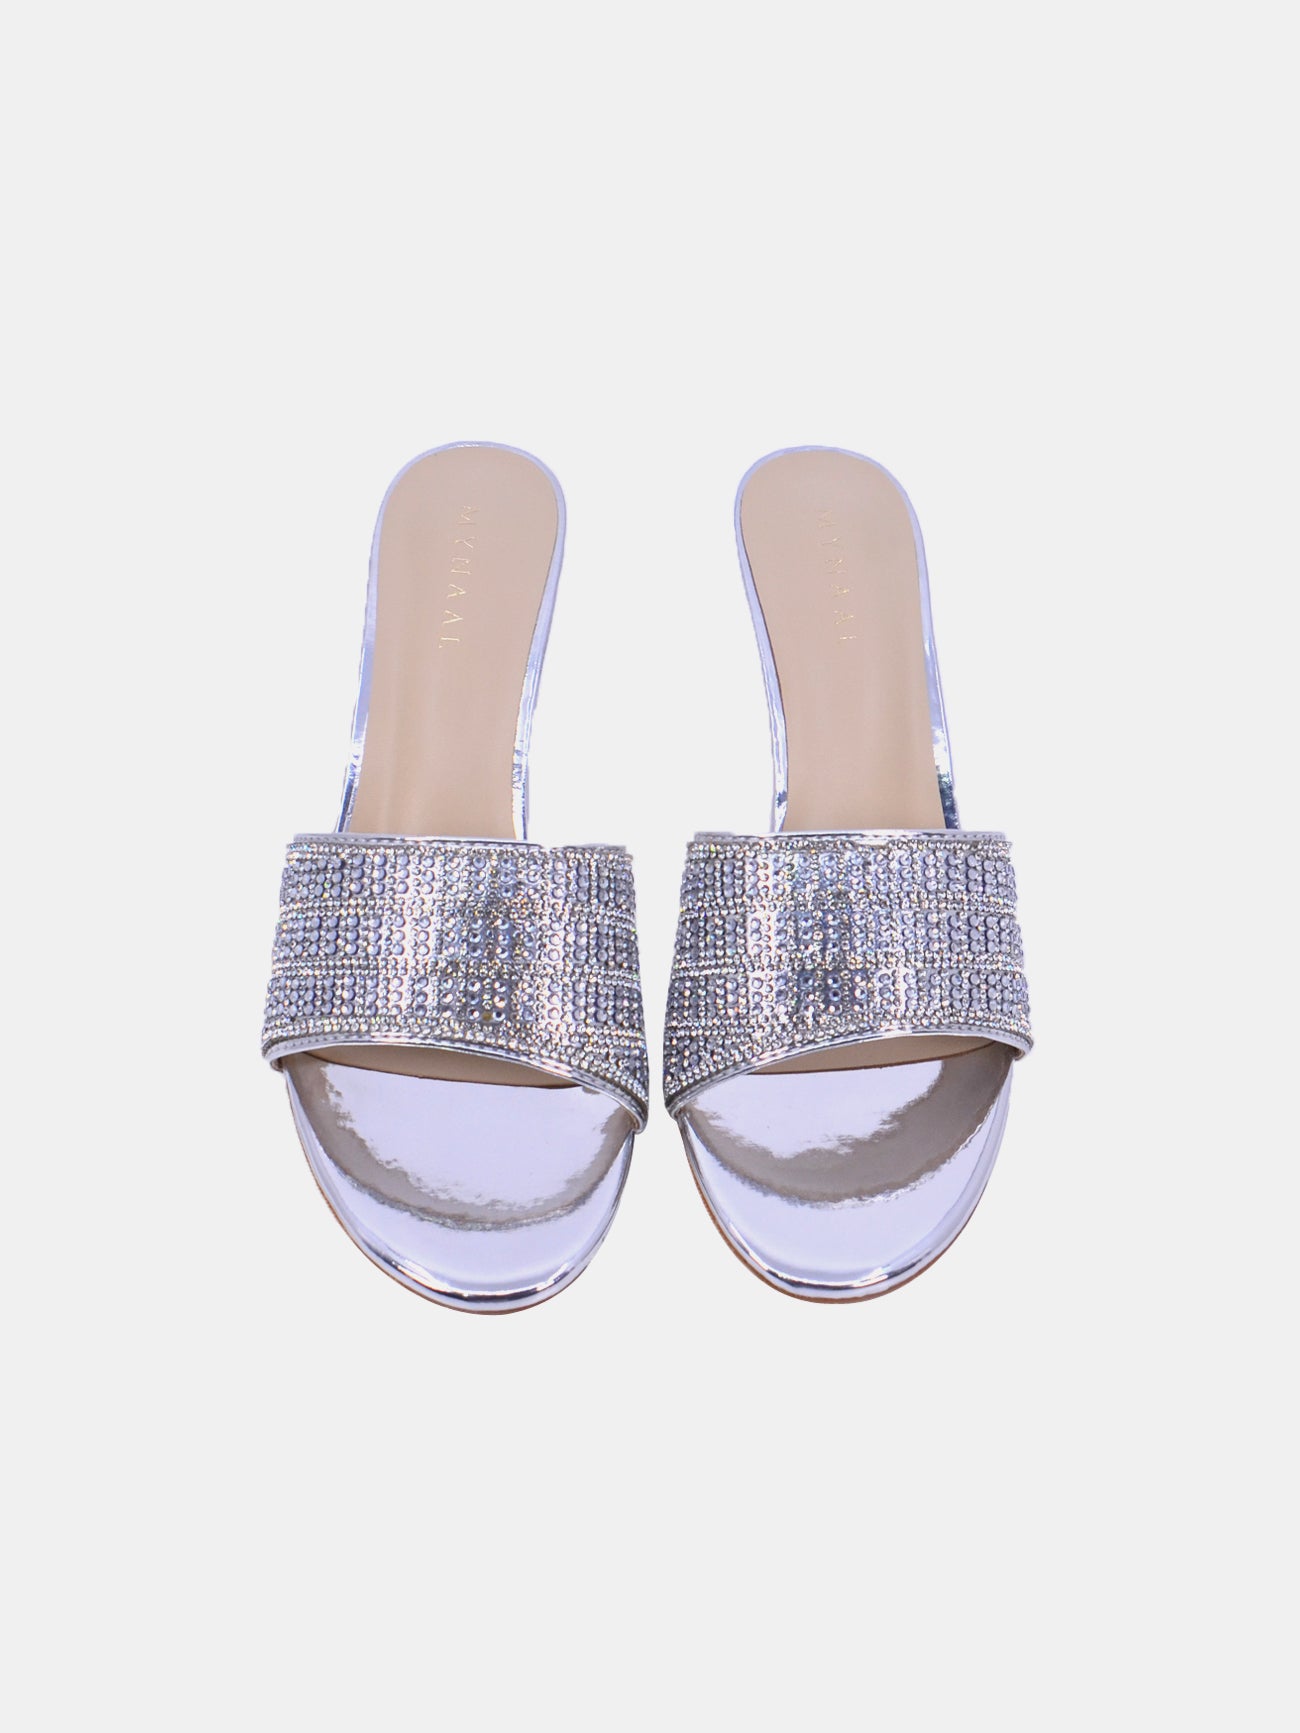 Mynaal Dazea Women's Kitten Heel Sandals #color_Silver